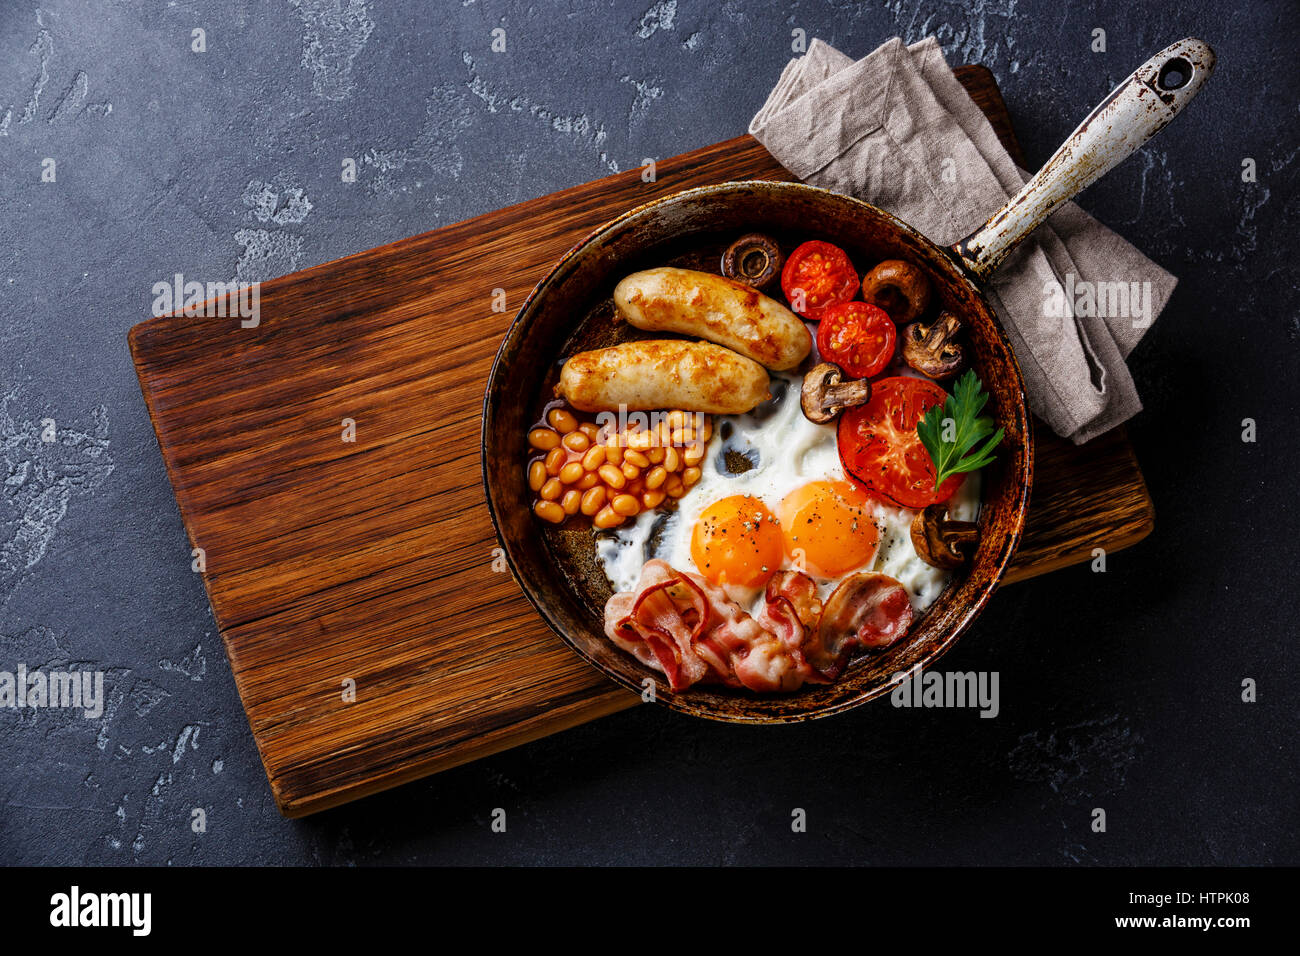 Prima colazione inglese nel recipiente di cottura con uova fritte, salsicce, bacon e fagioli in pietra scura sullo sfondo Foto Stock